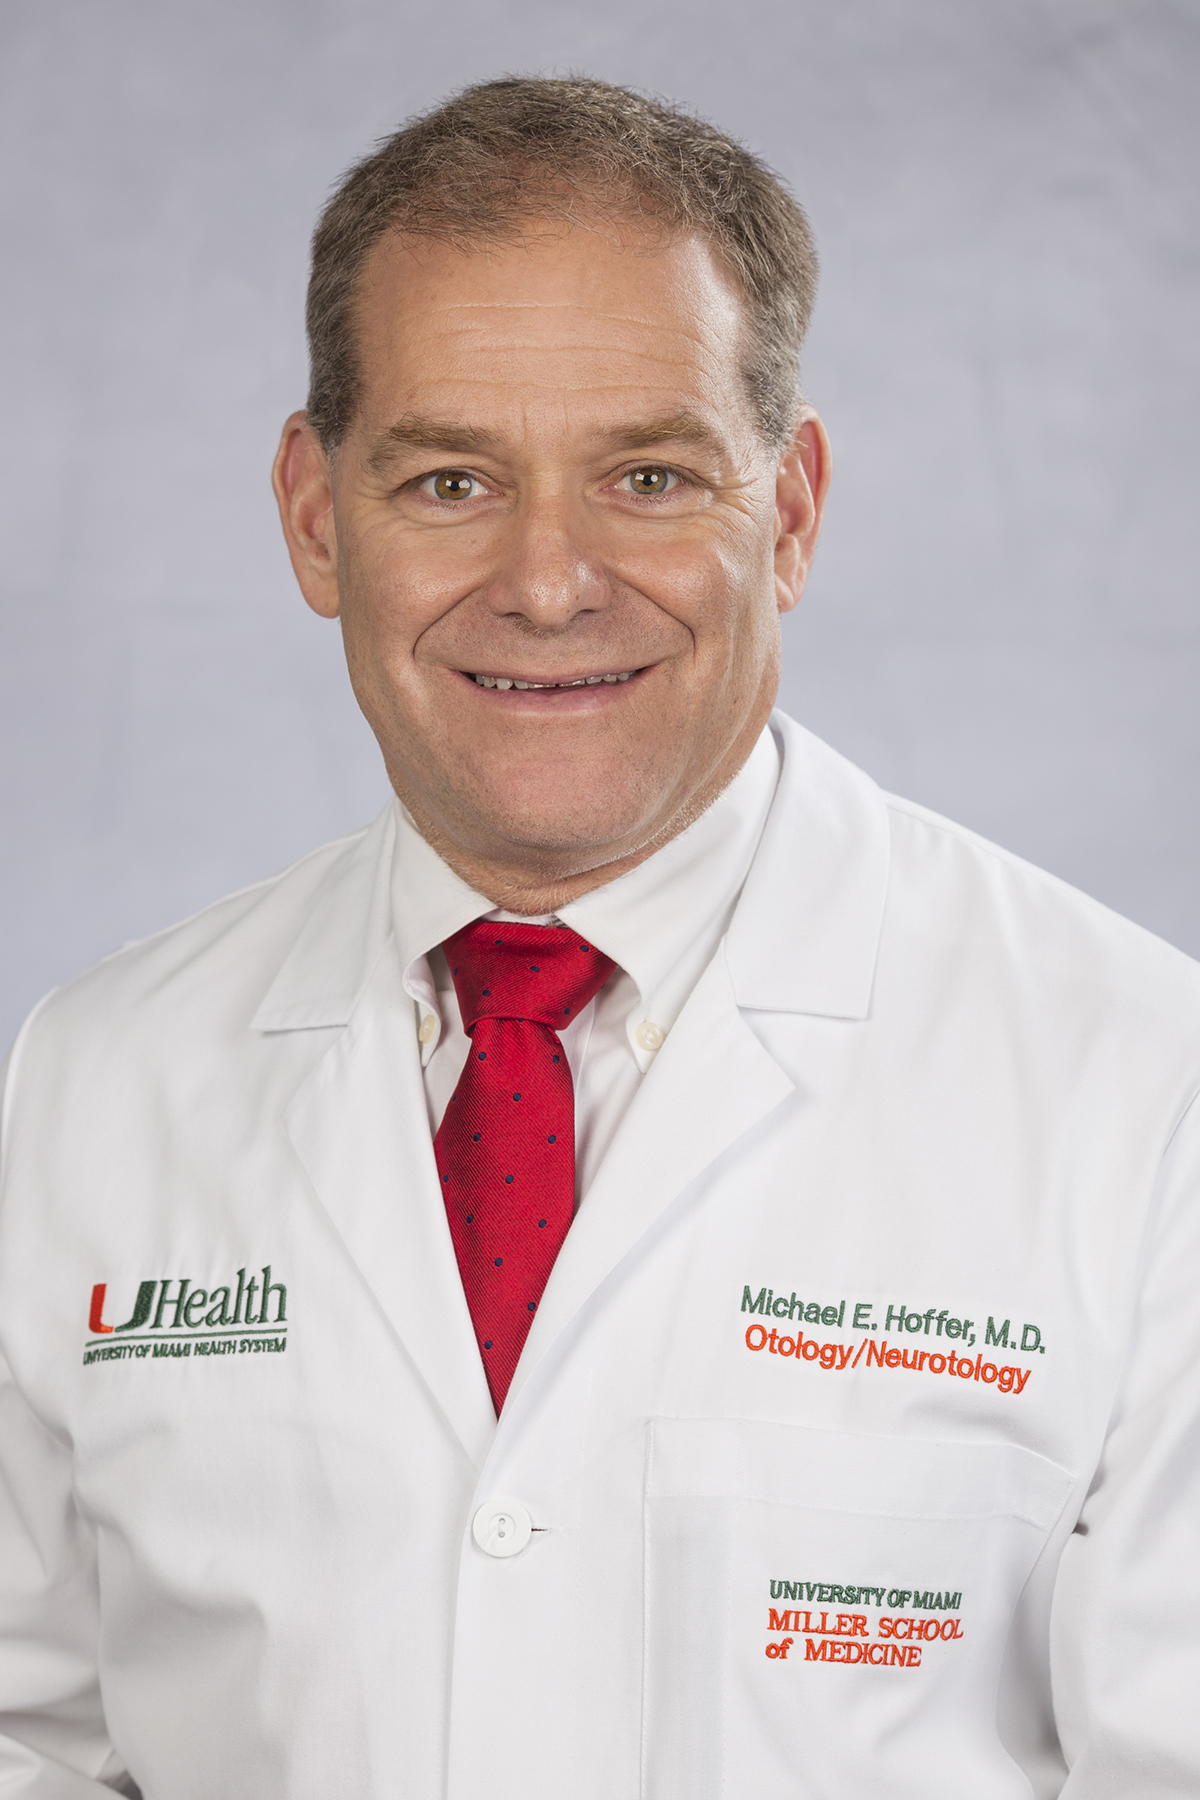 Dr. Michael E. Hoffer